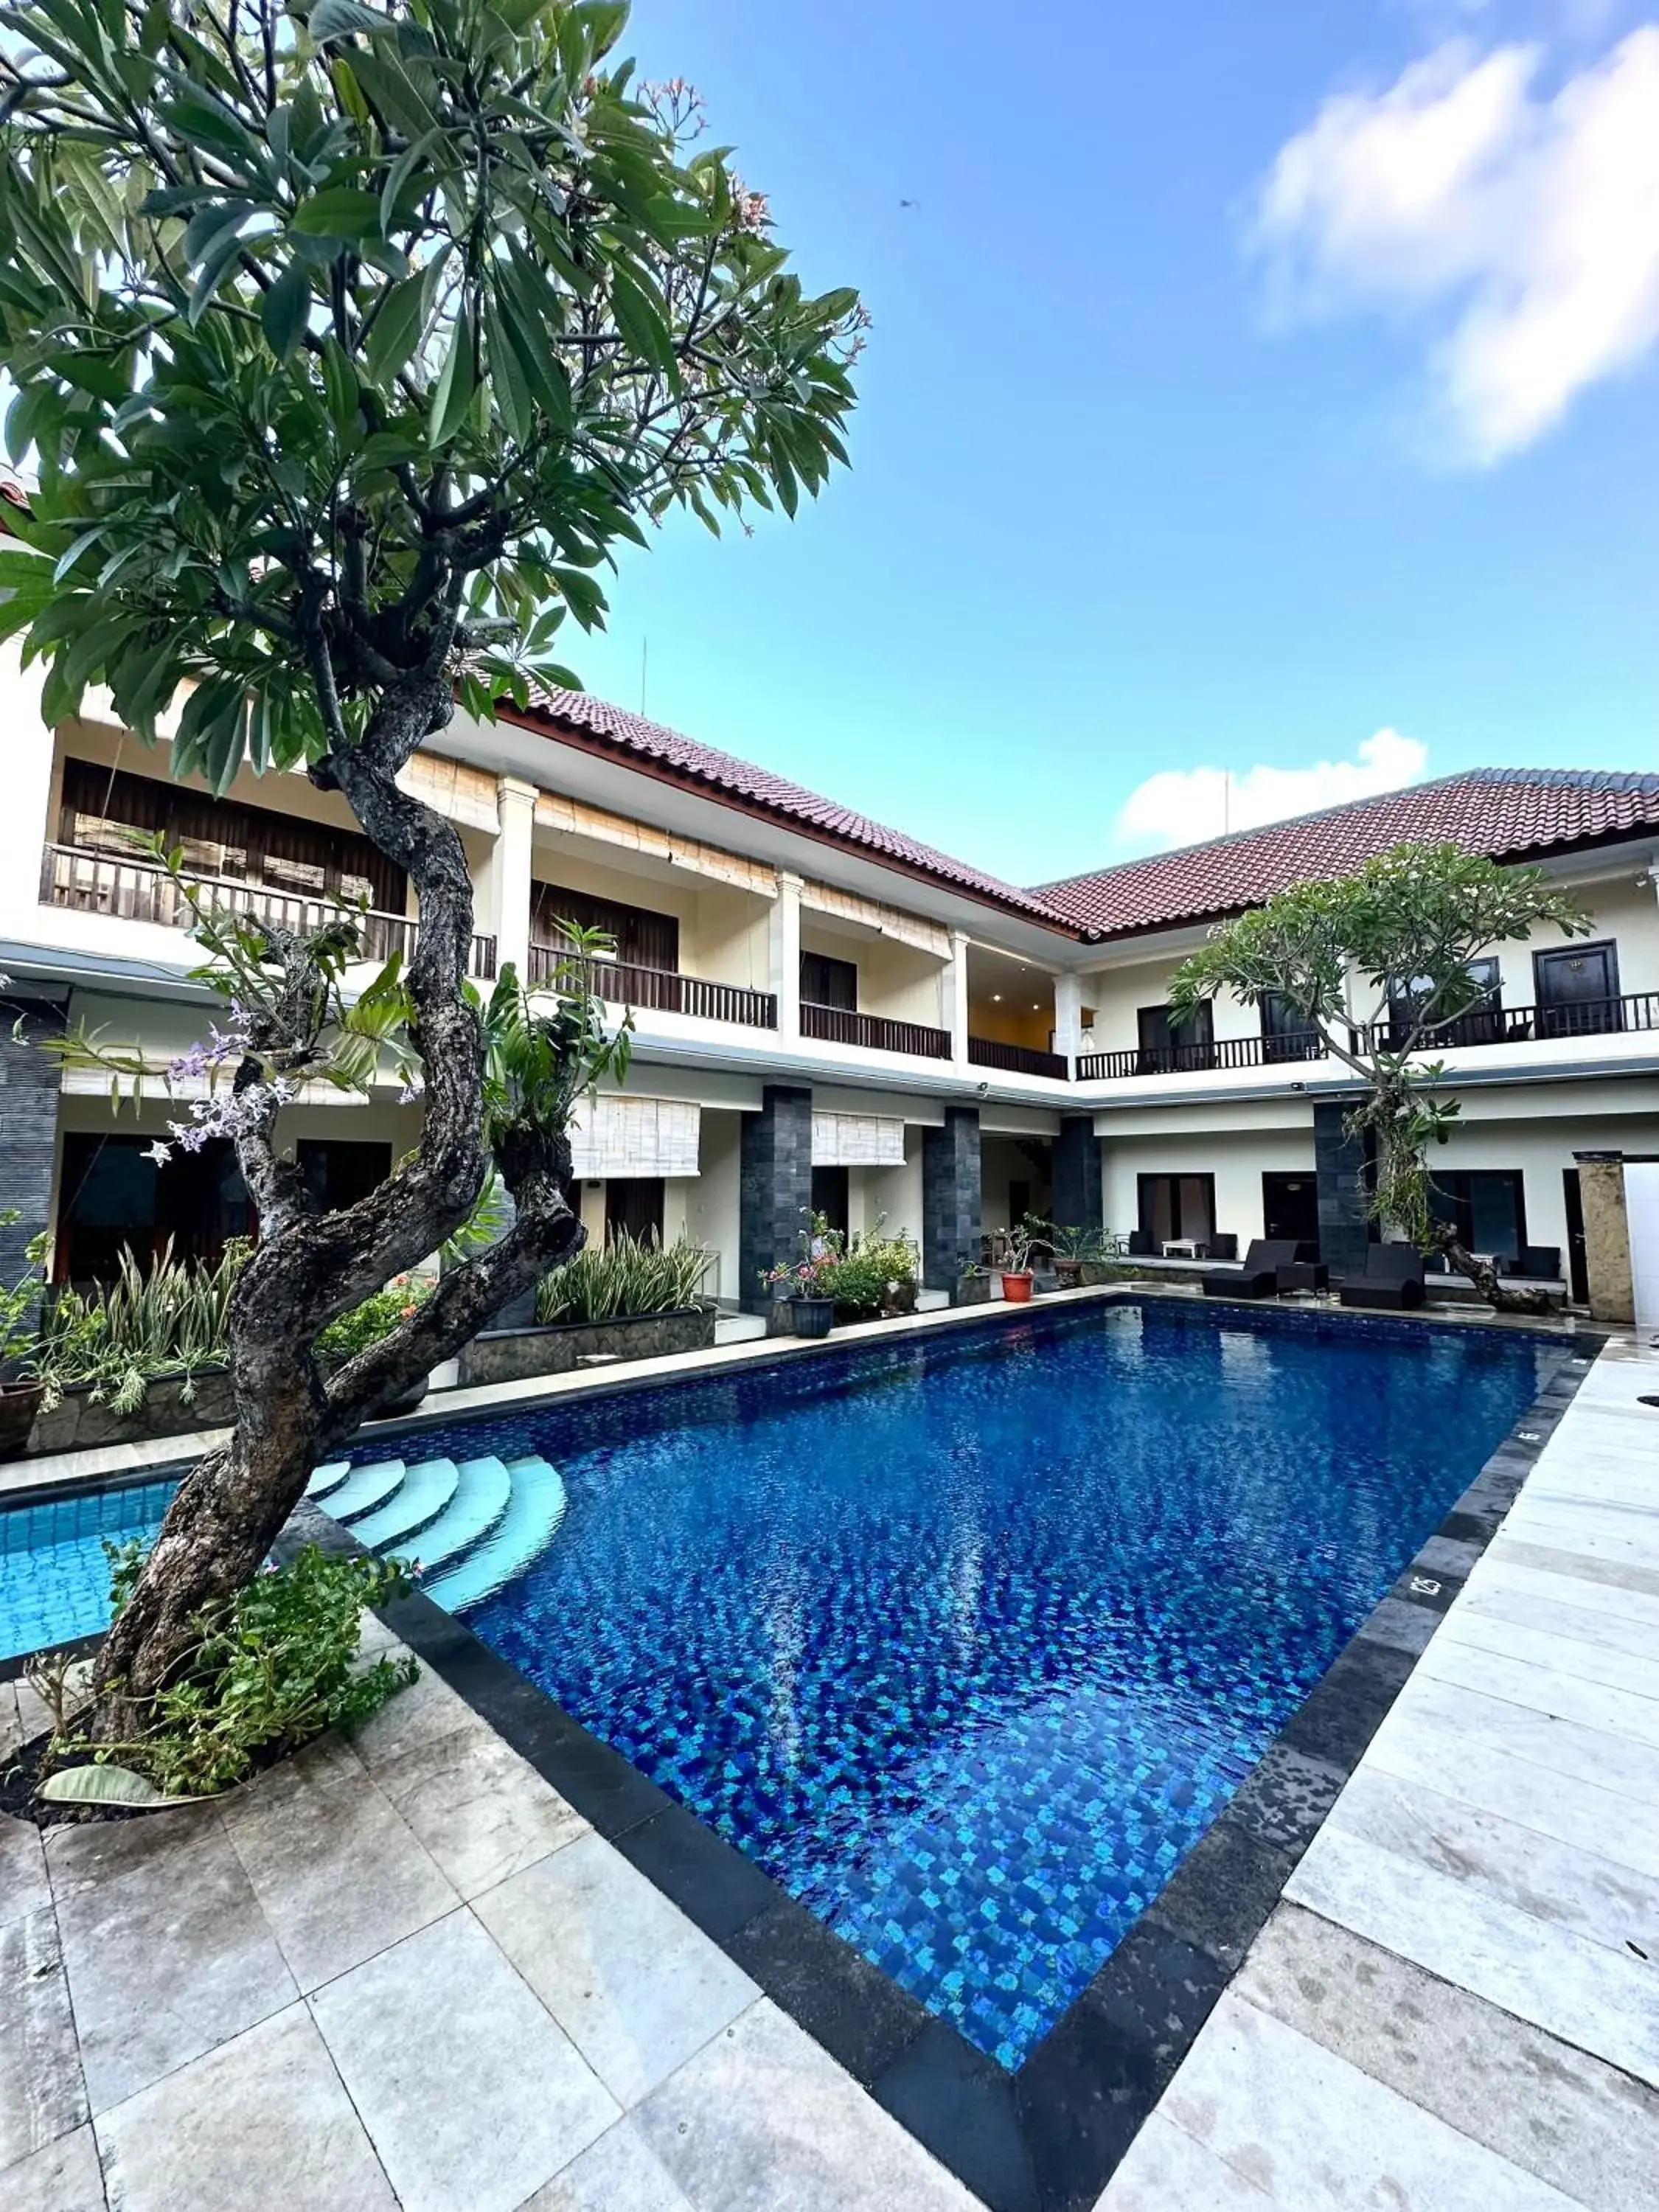 Swimming Pool in Radha Bali Hotel